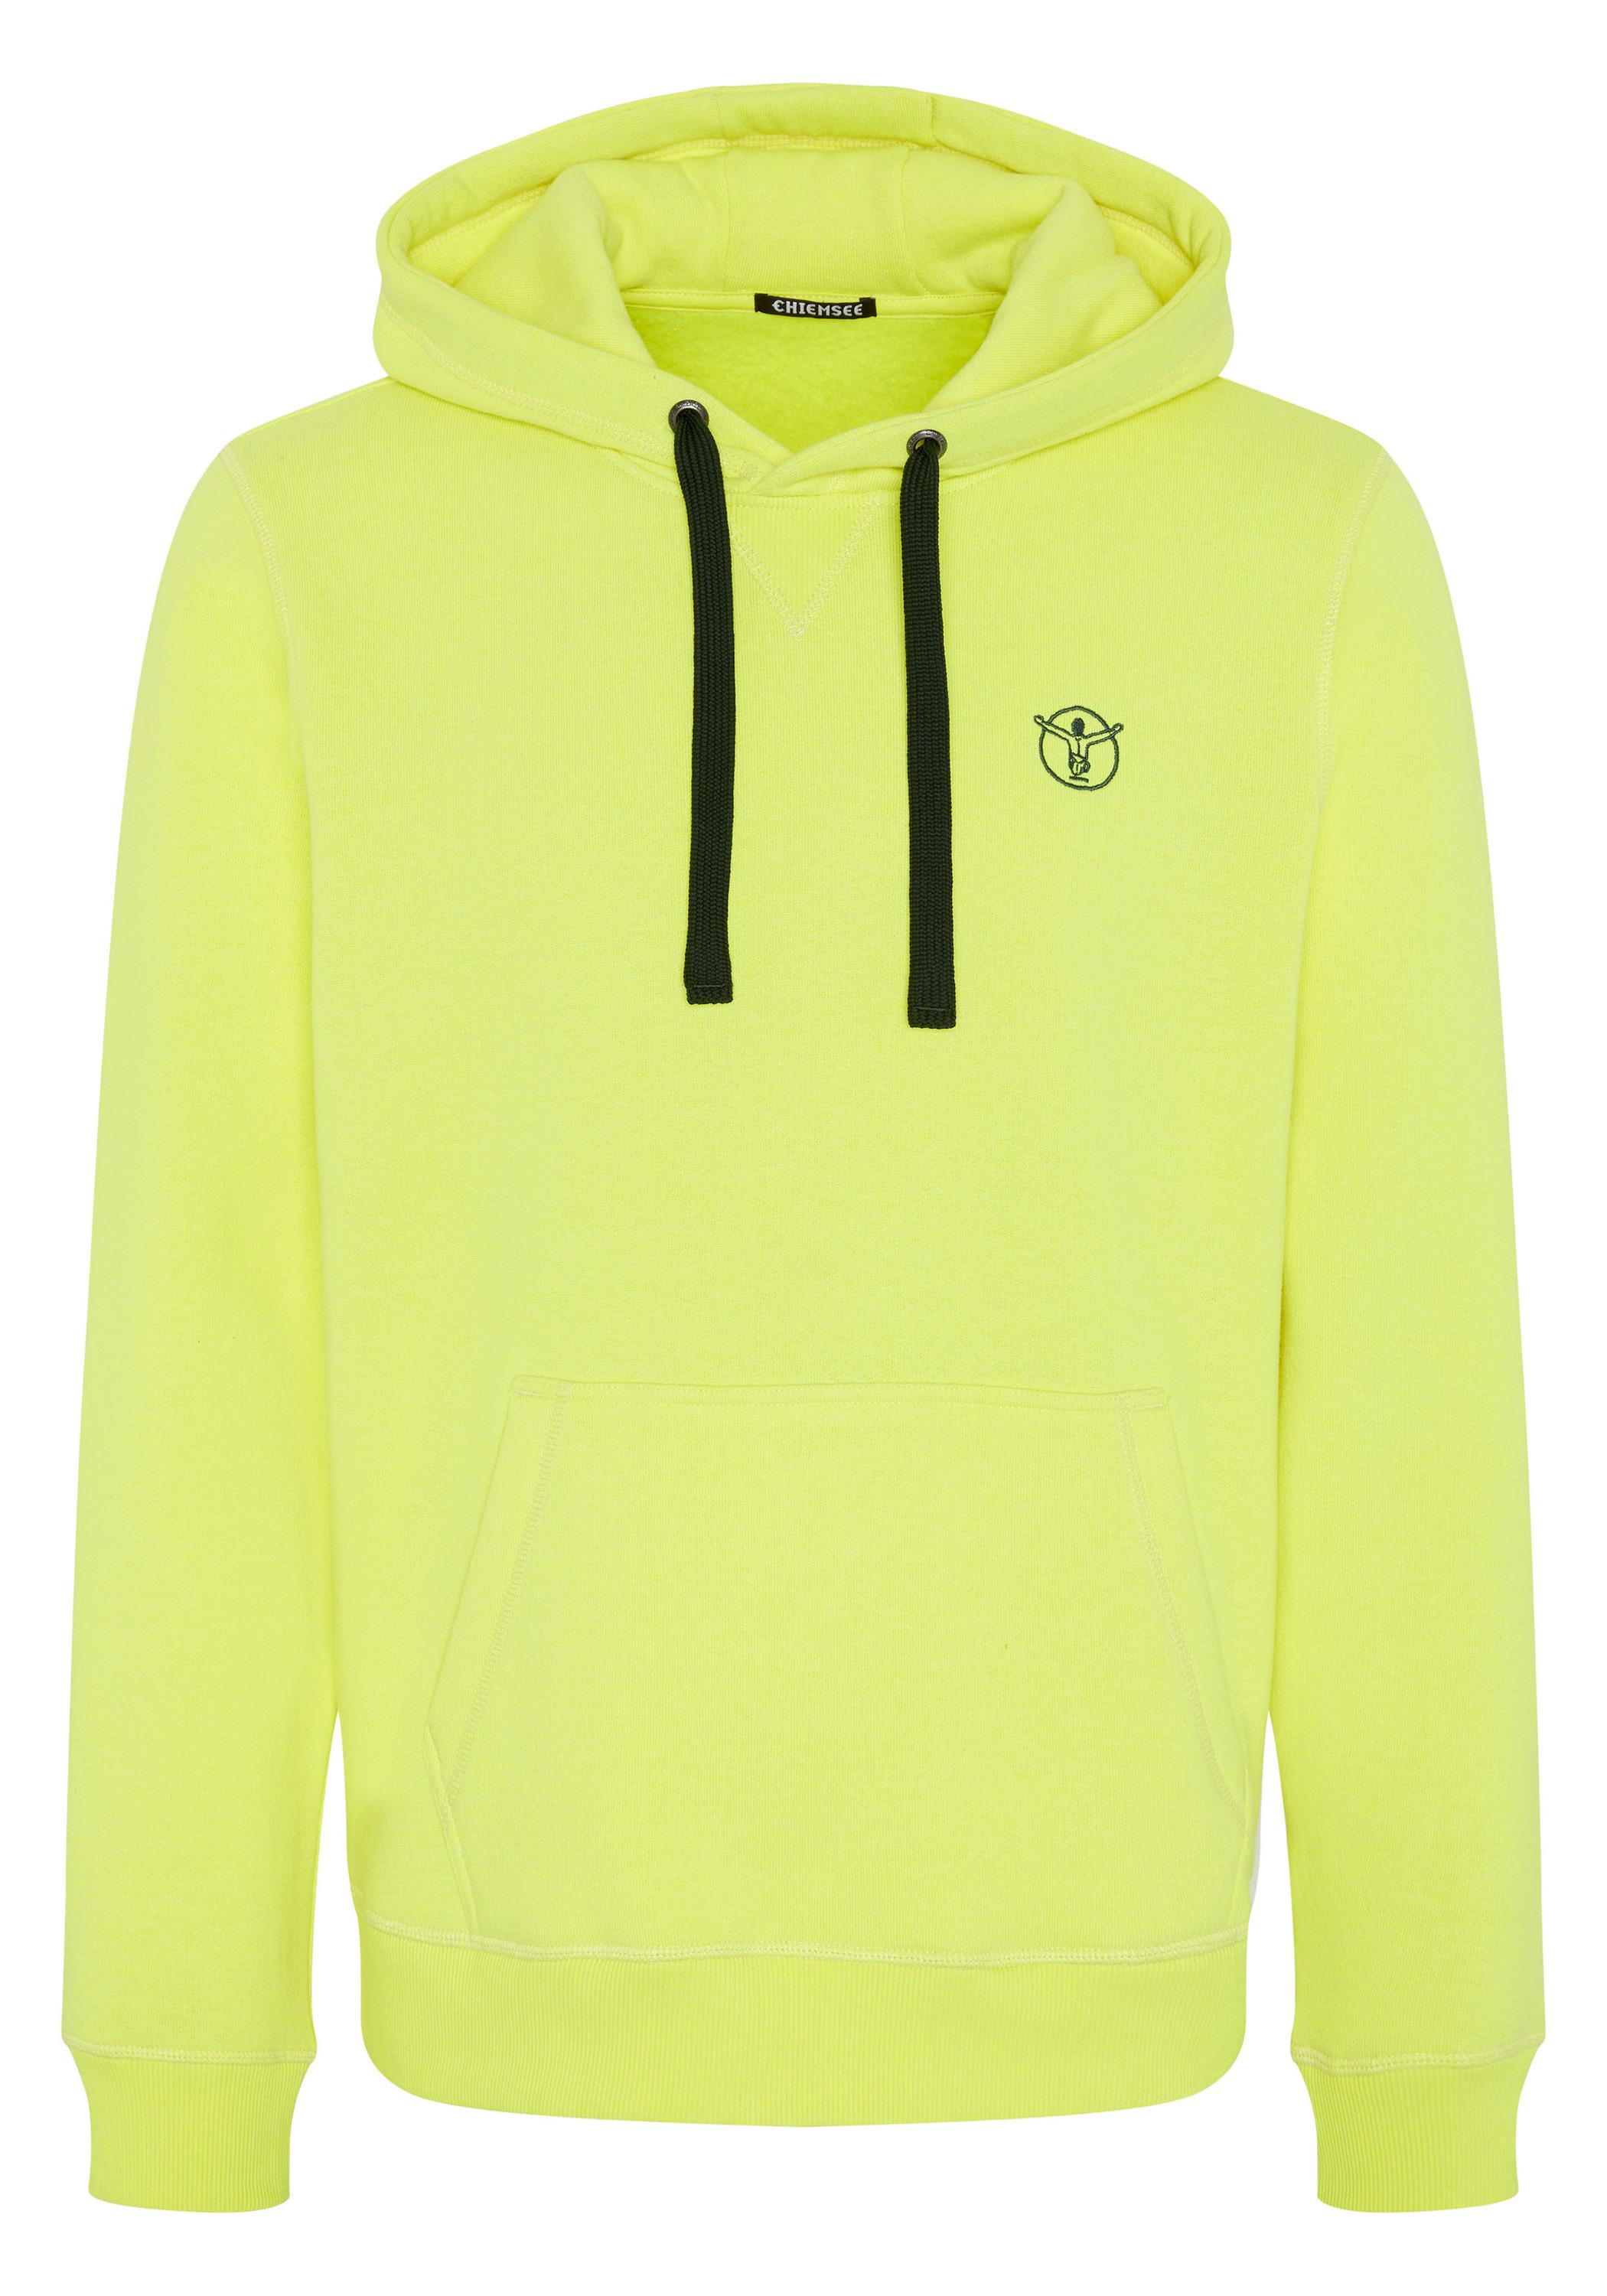 Chiemsee Kapuzensweatshirt Sweatshirt Herren Yellow Online Shop Safety im kaufen SportScheck von